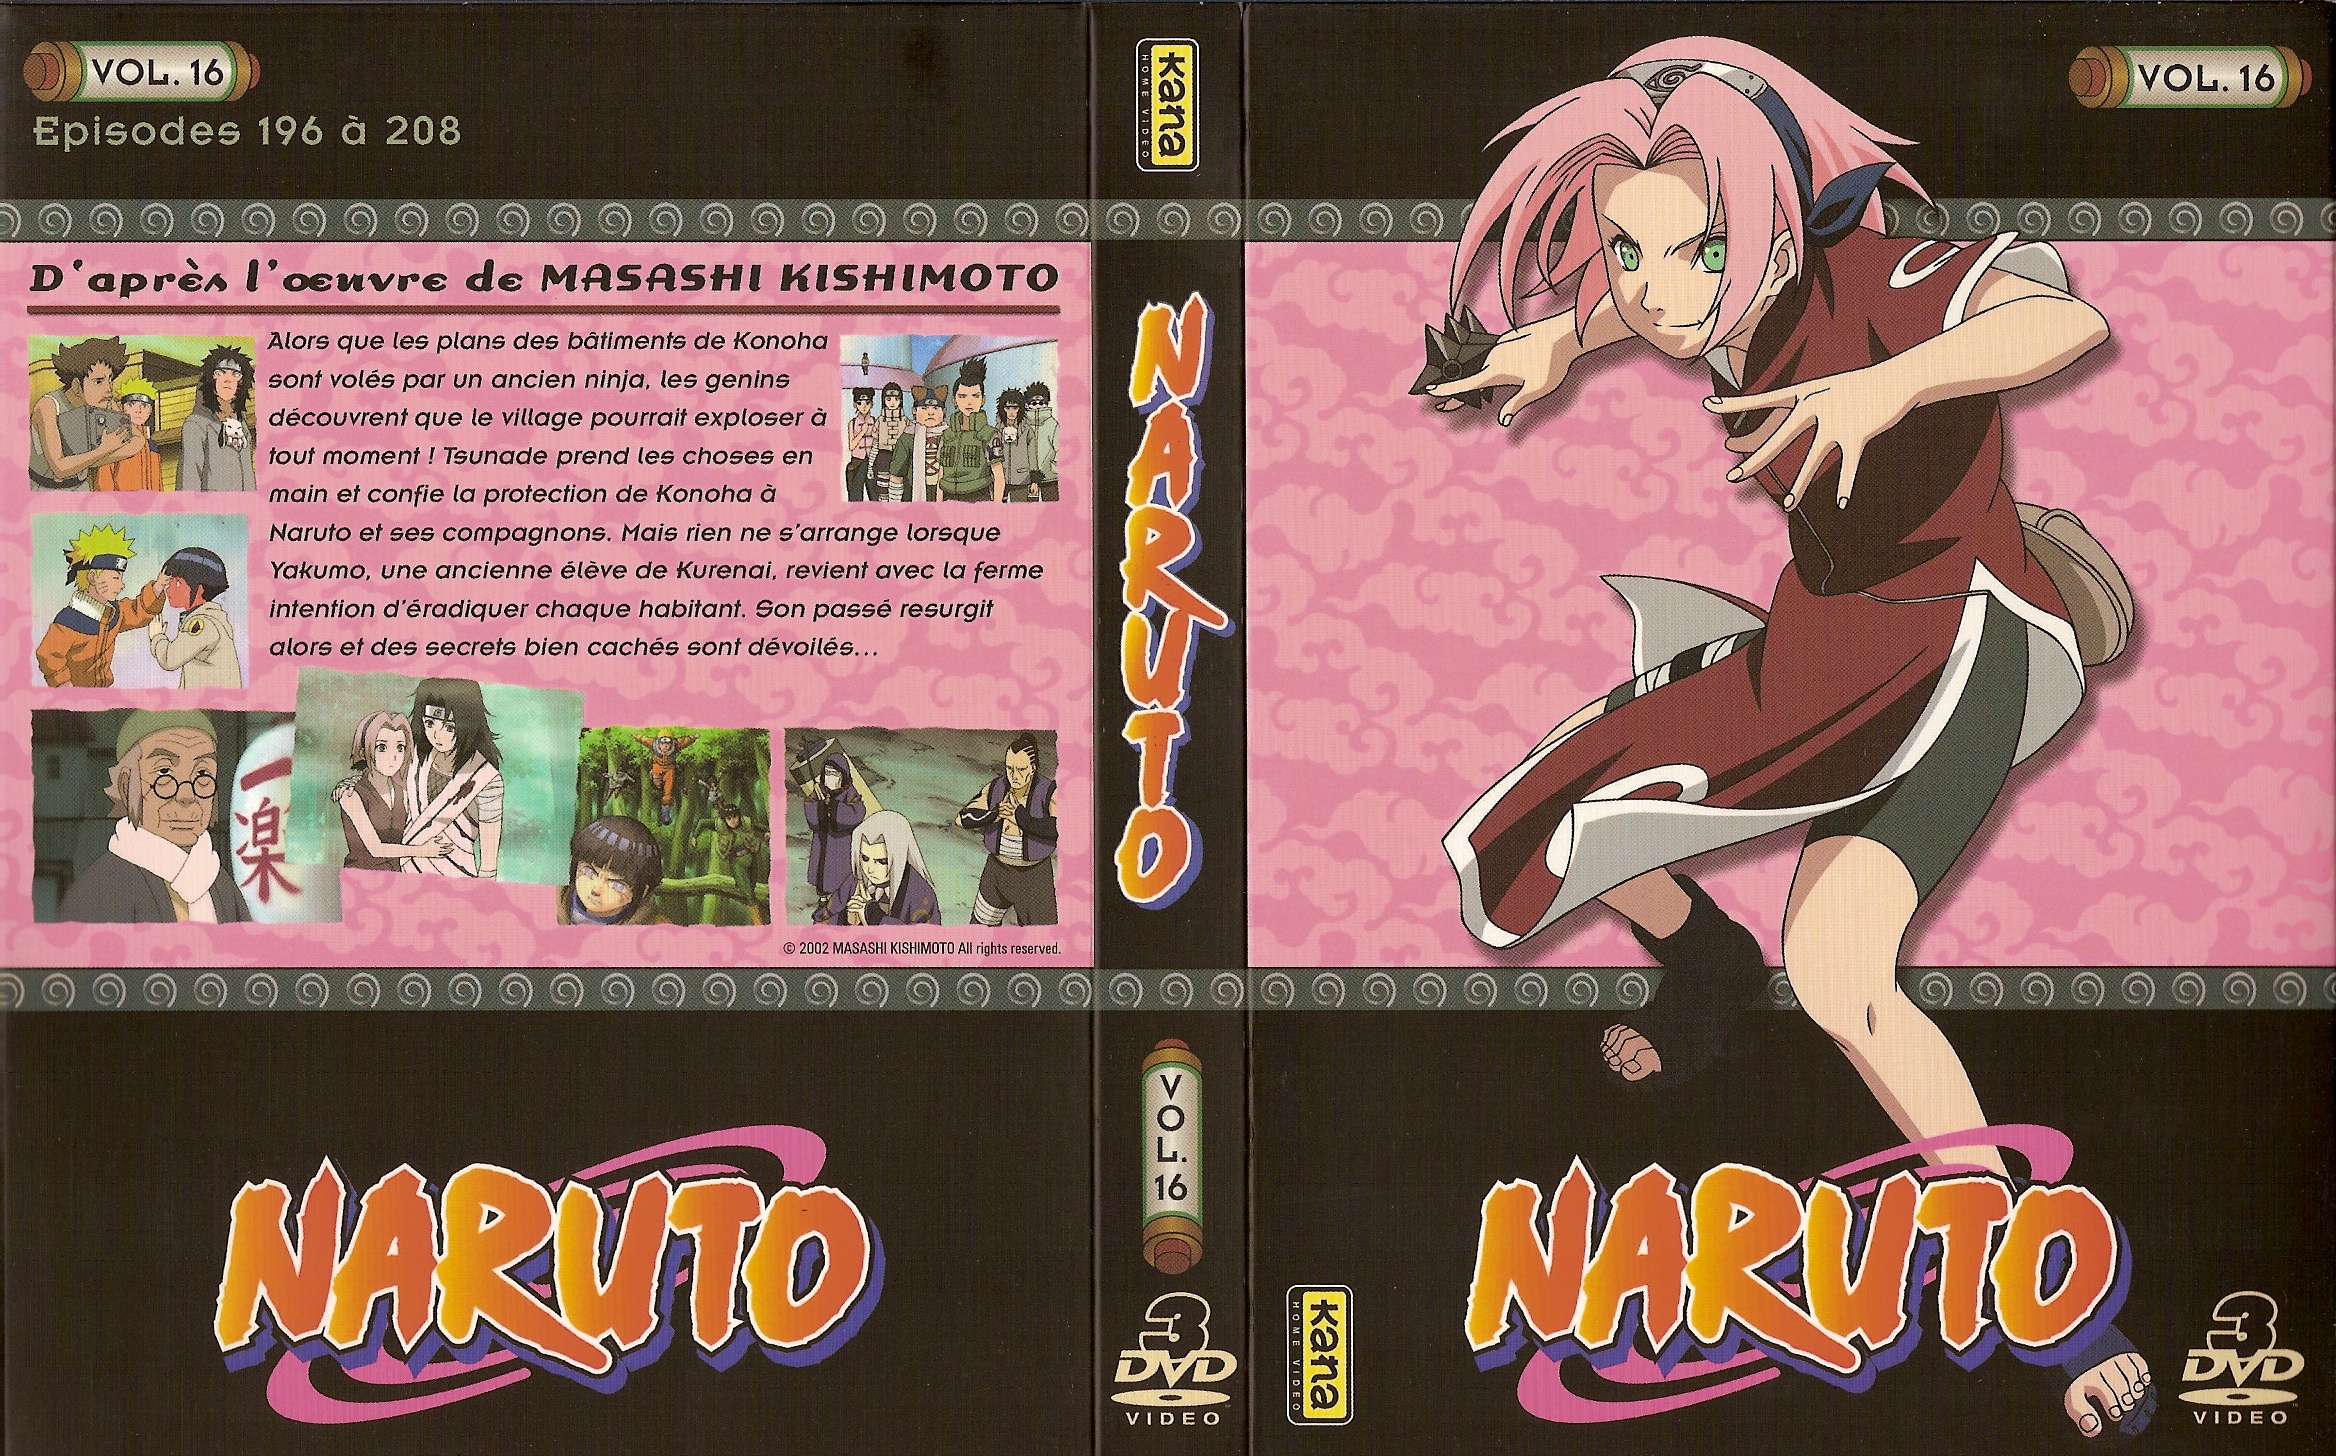 Jaquette DVD Naruto vol 16